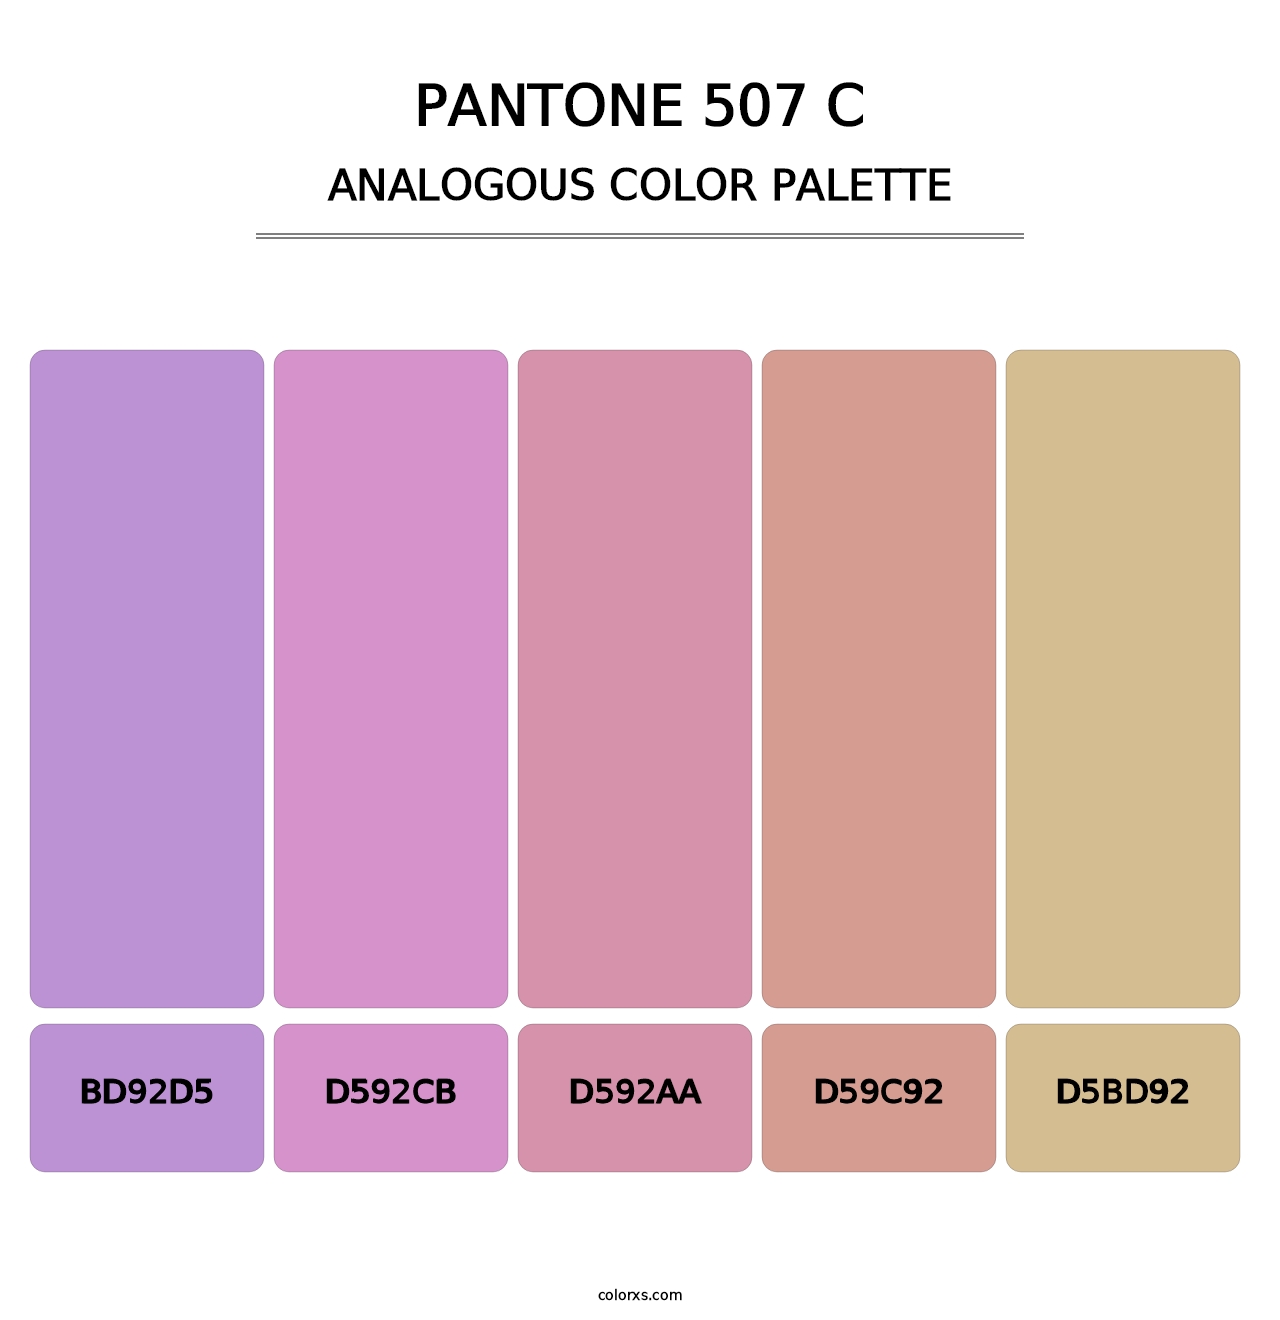 PANTONE 507 C - Analogous Color Palette